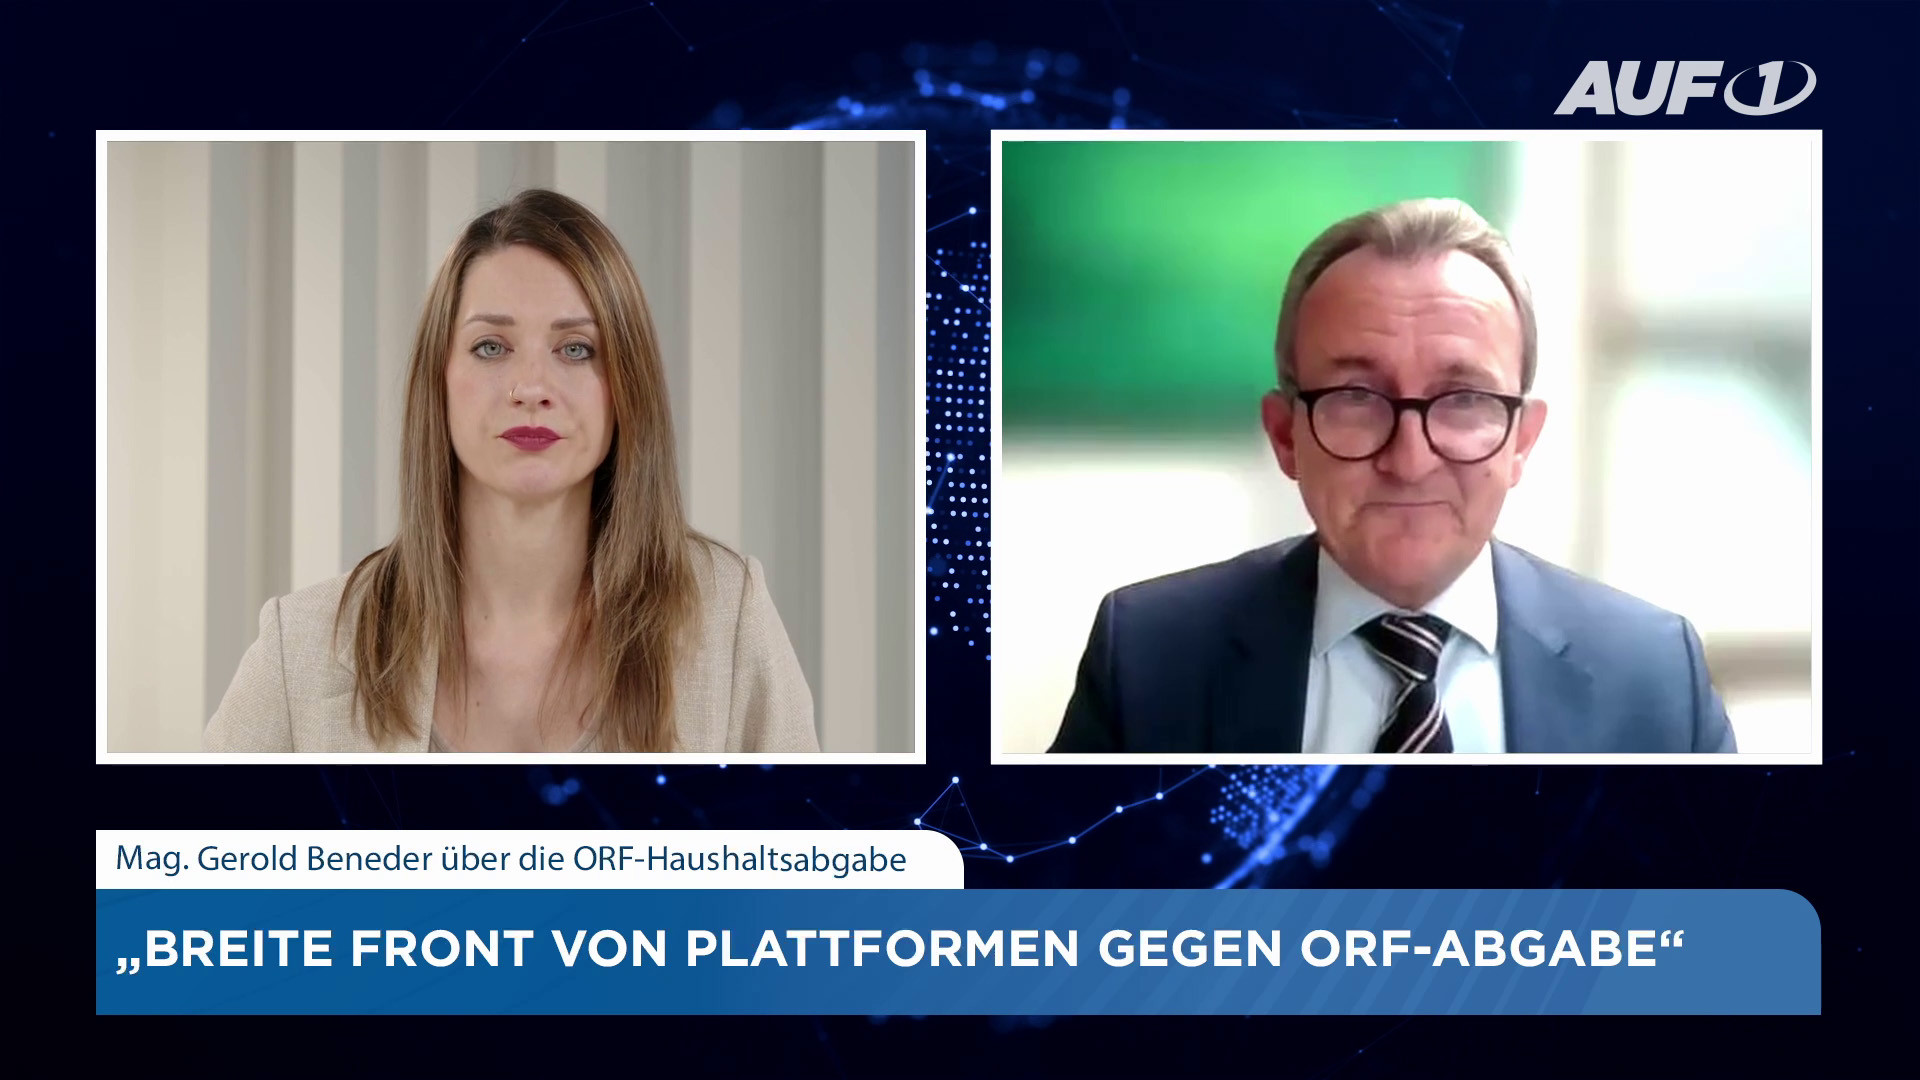 Rechtsanwalt Beneder: „Breite Front von Plattformen gegen ORF-Abgabe“